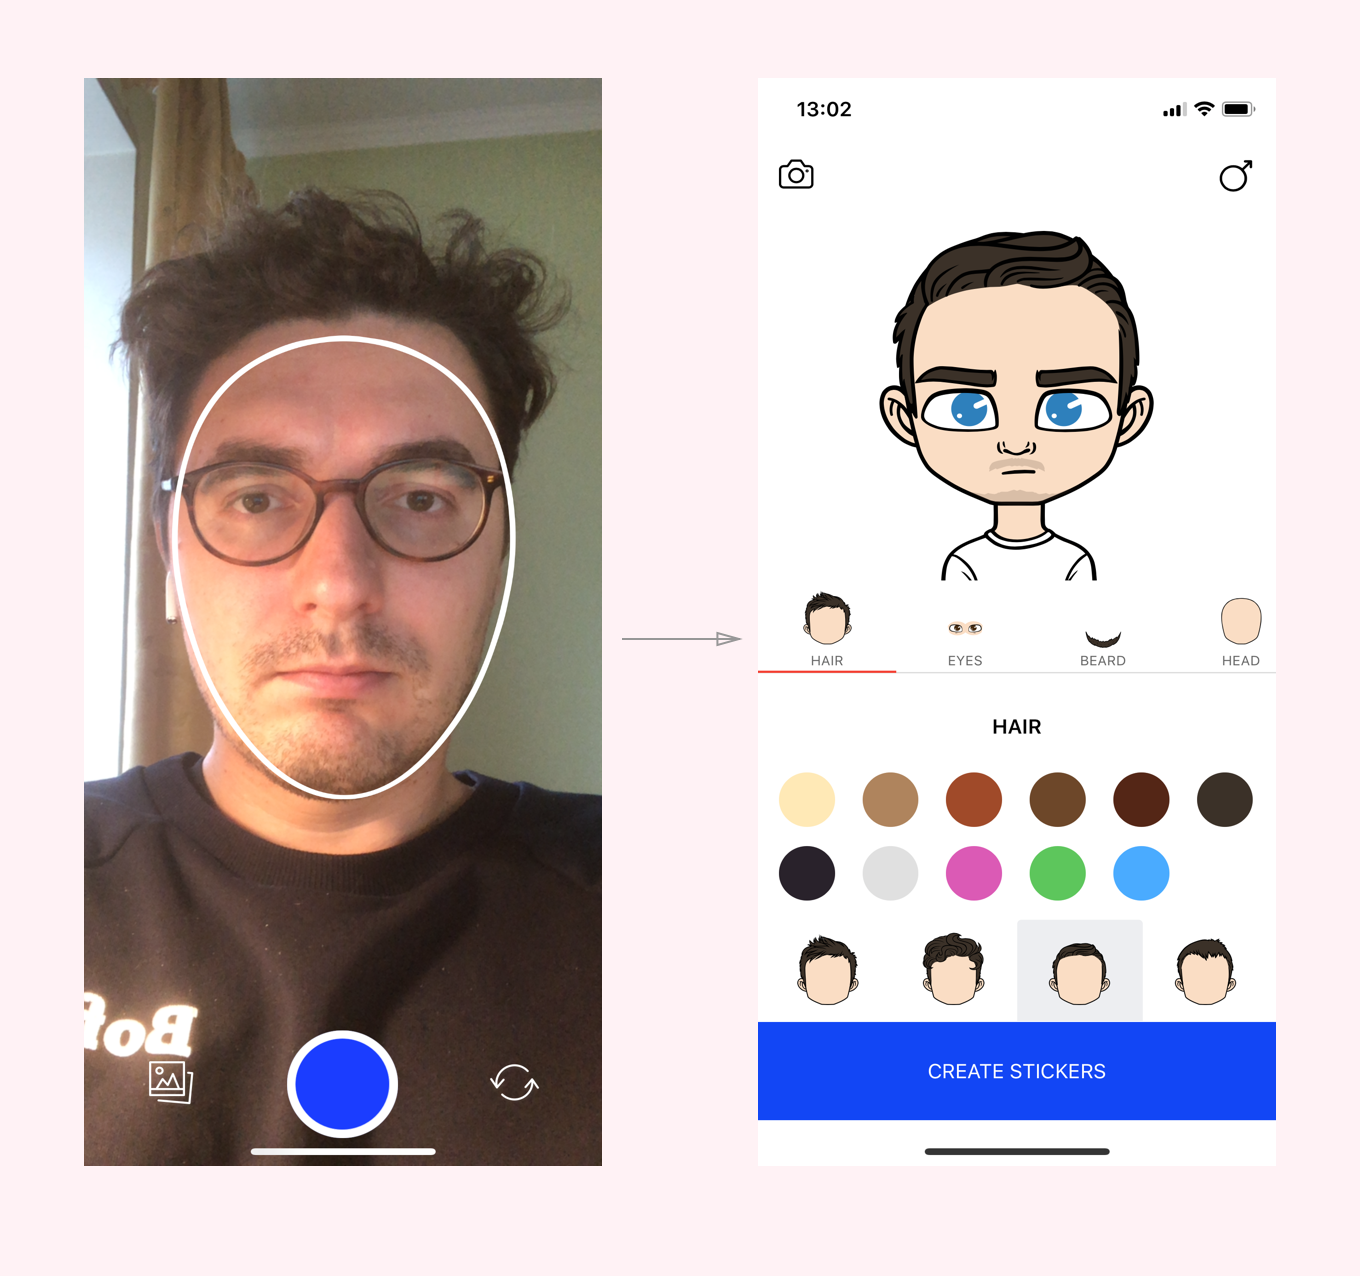 Дай приложение где можно. Программа для создания аватарки. Создание стикеров со своим лицом. Приложение для делания стикеров. Приложение для создания своего аватара.